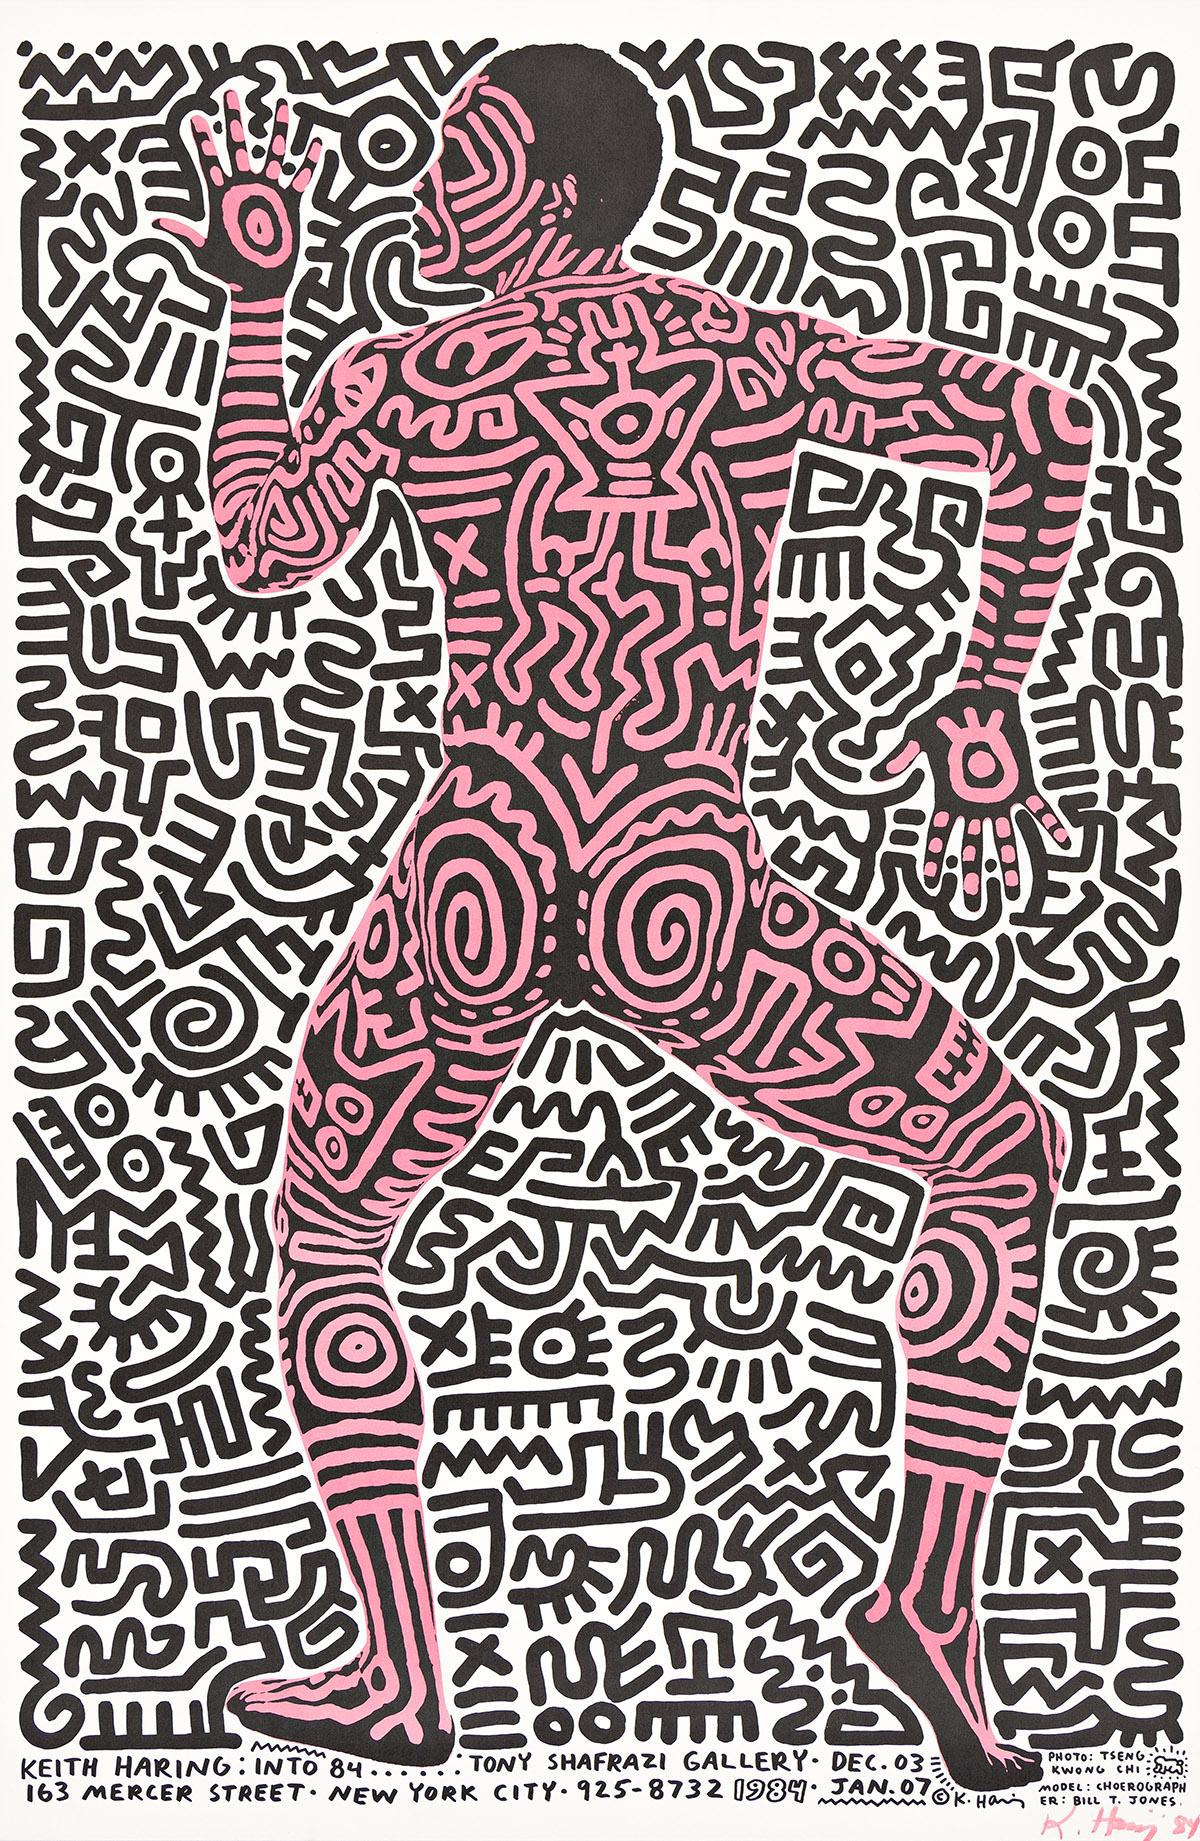 Keith Haring : Into 1984/Tony Shafrazi Gallery